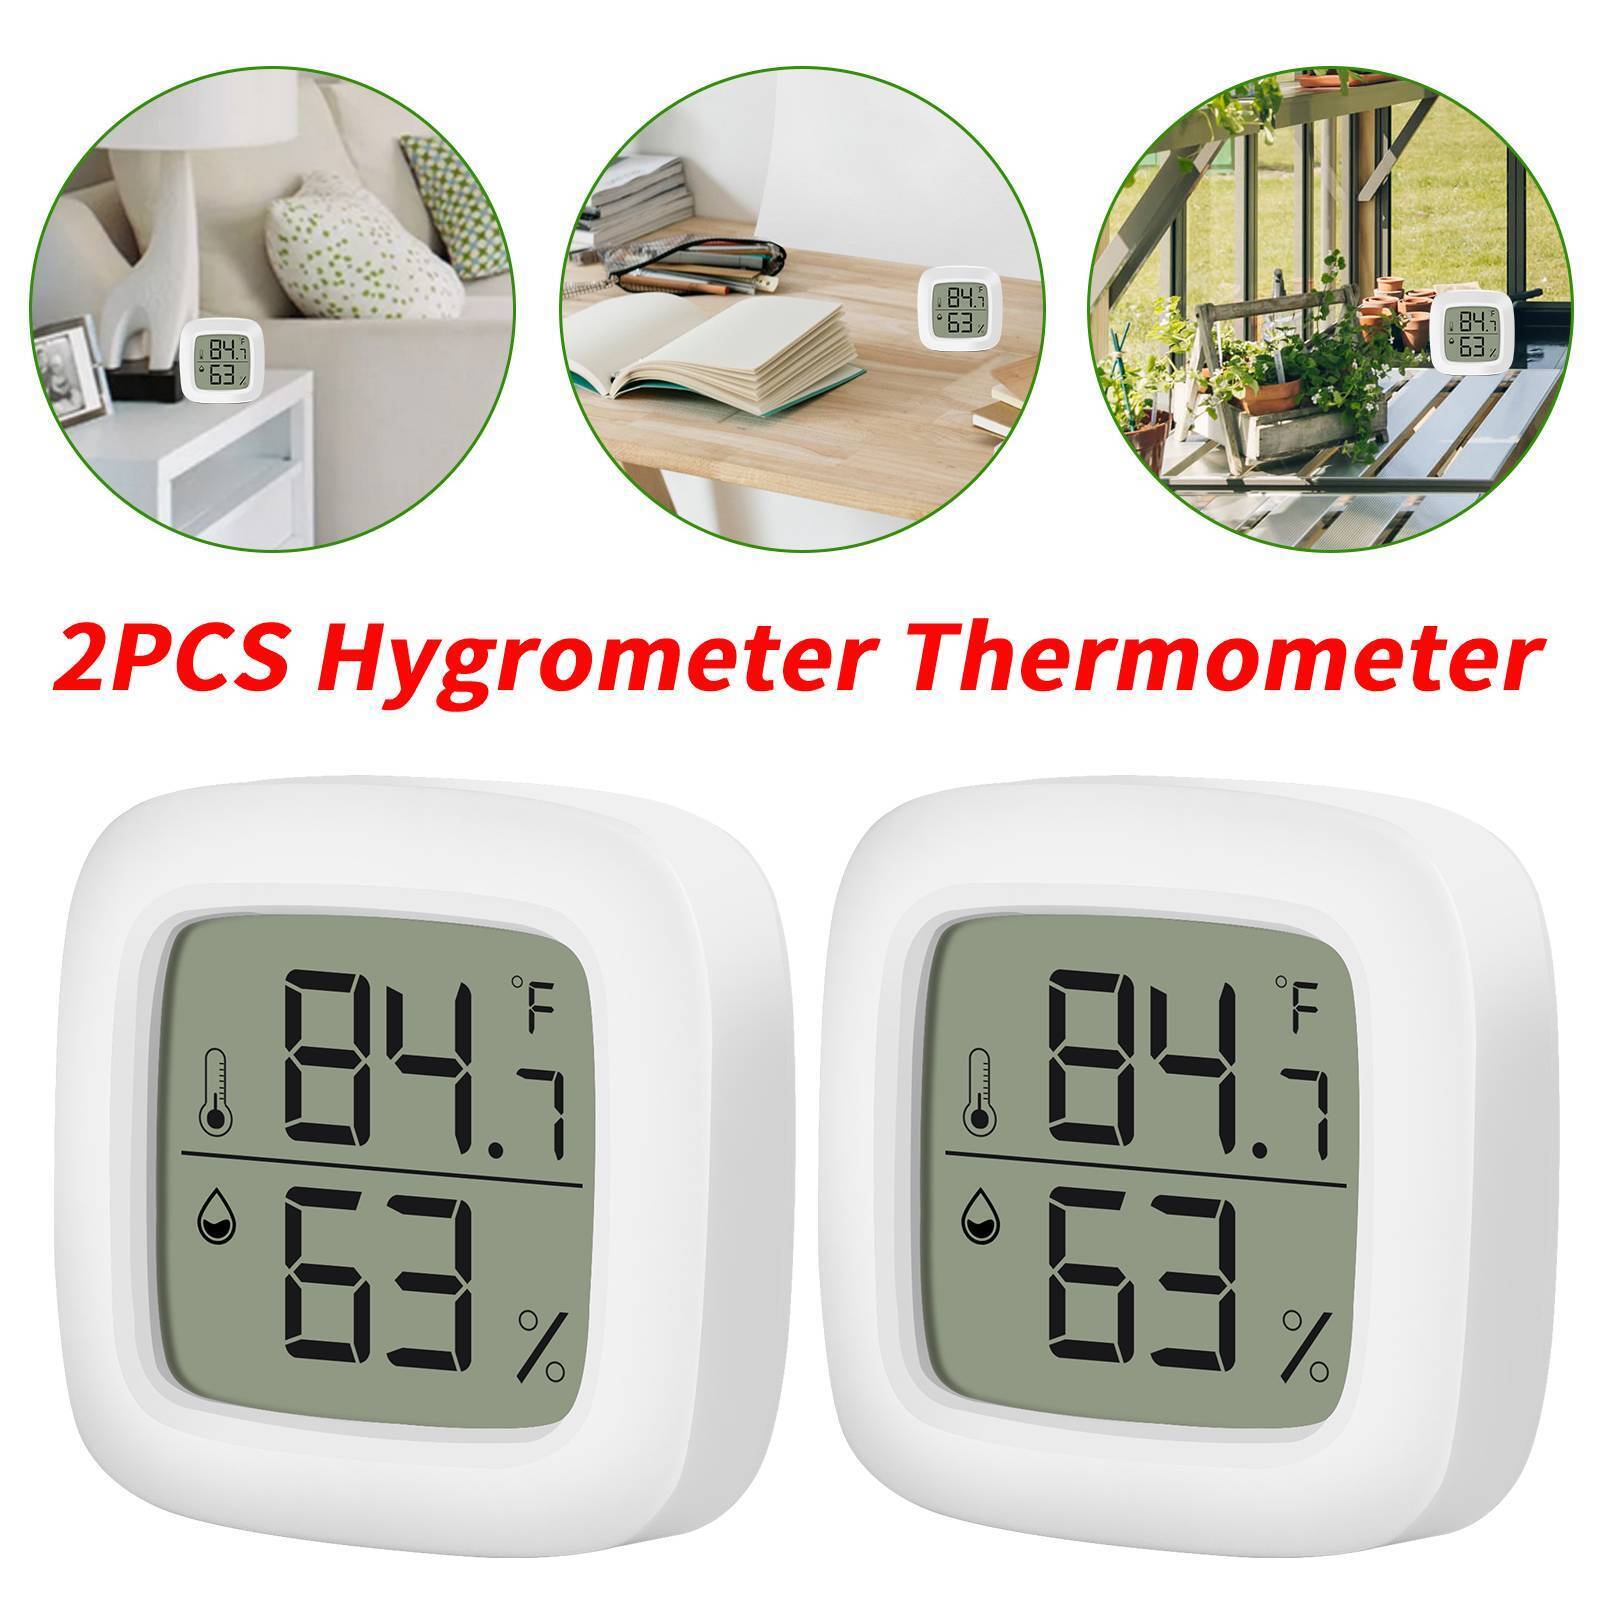 2 PCS Mini Thermometer Digital LCD Display Hygrometer Temperature Humidity Meter